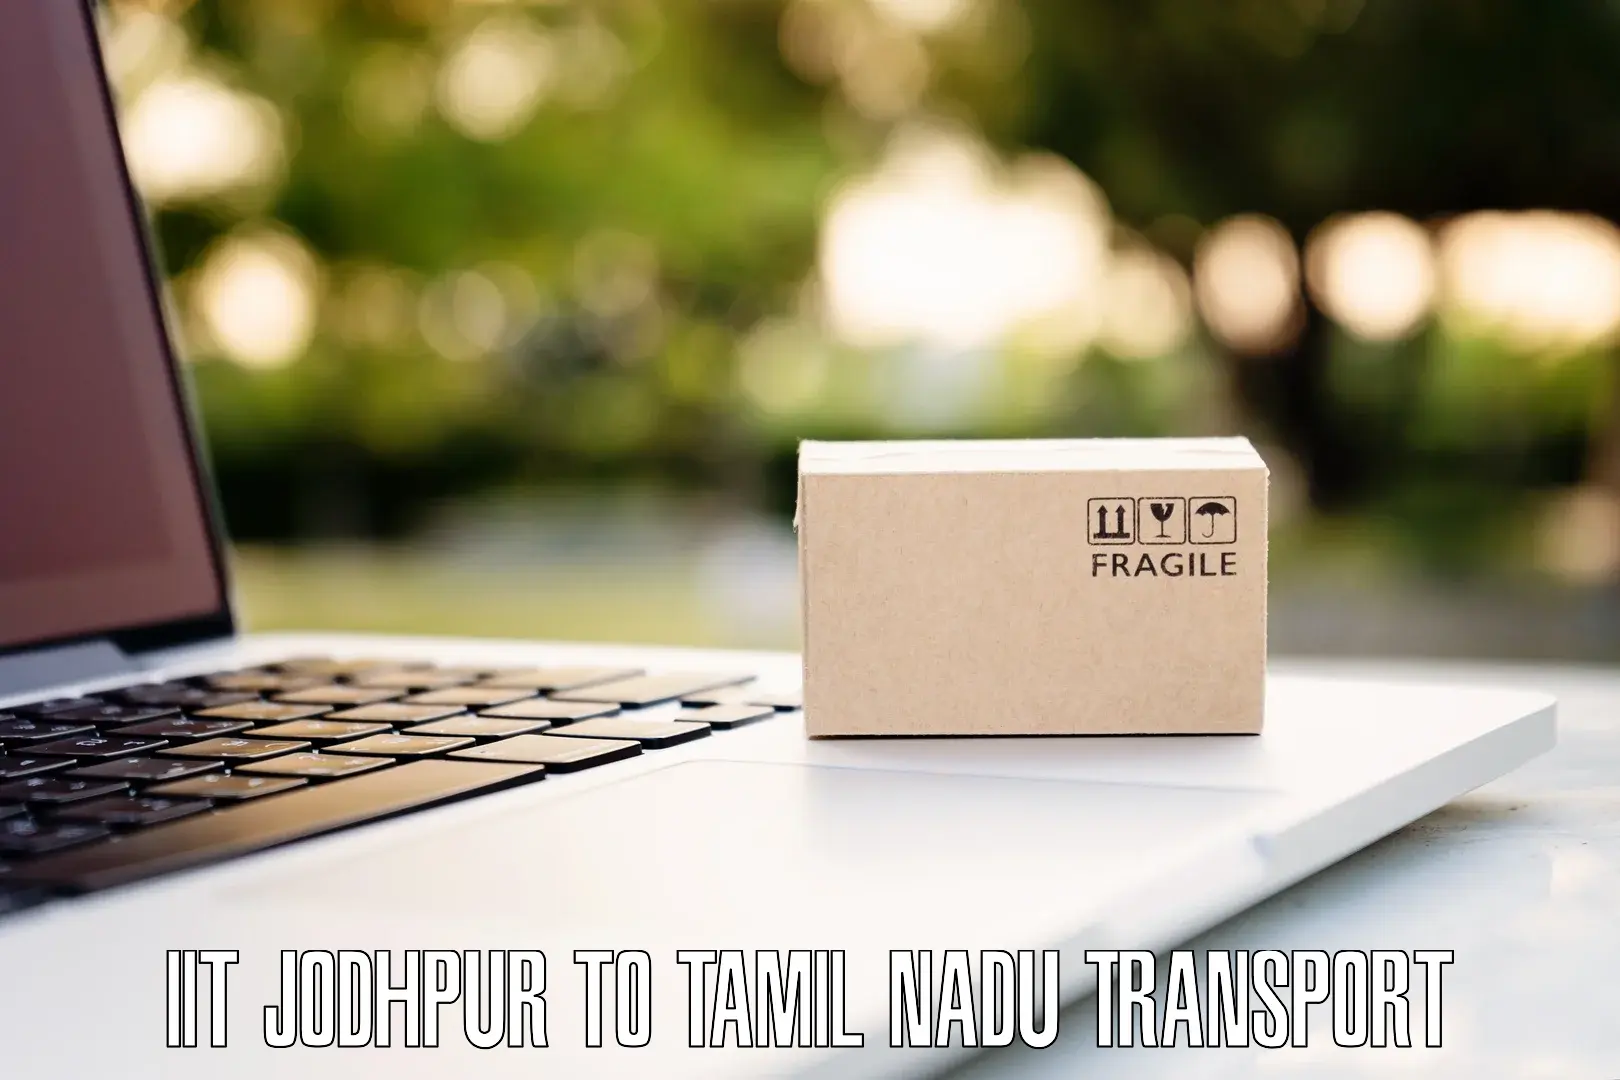 Online transport service IIT Jodhpur to Vadipatti